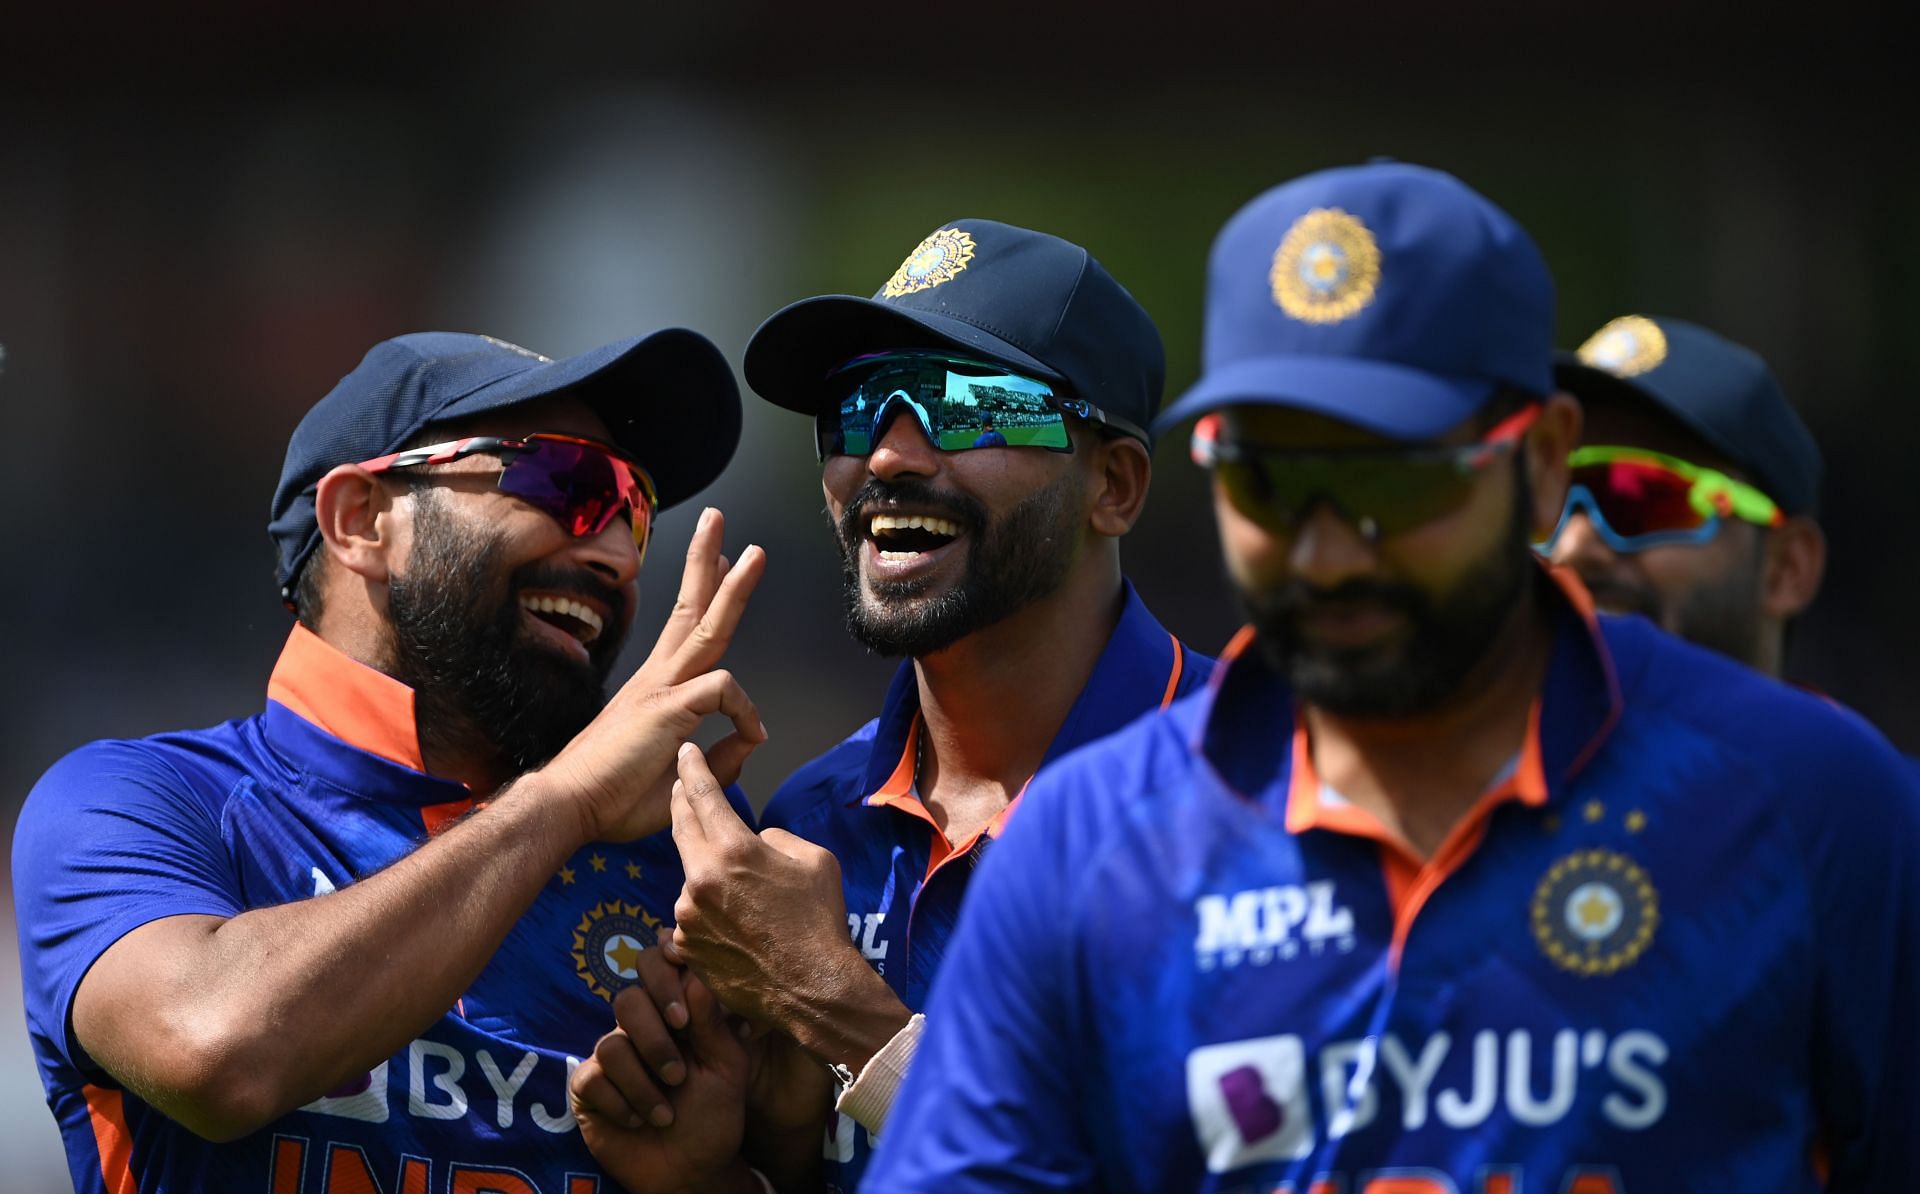 भारतीय टीम वेस्&zwj;टइंडीज दौरे पर तीन वनडे और पांच टी20 इंटरनेशनल मैचों की सीरीज खेलेगी